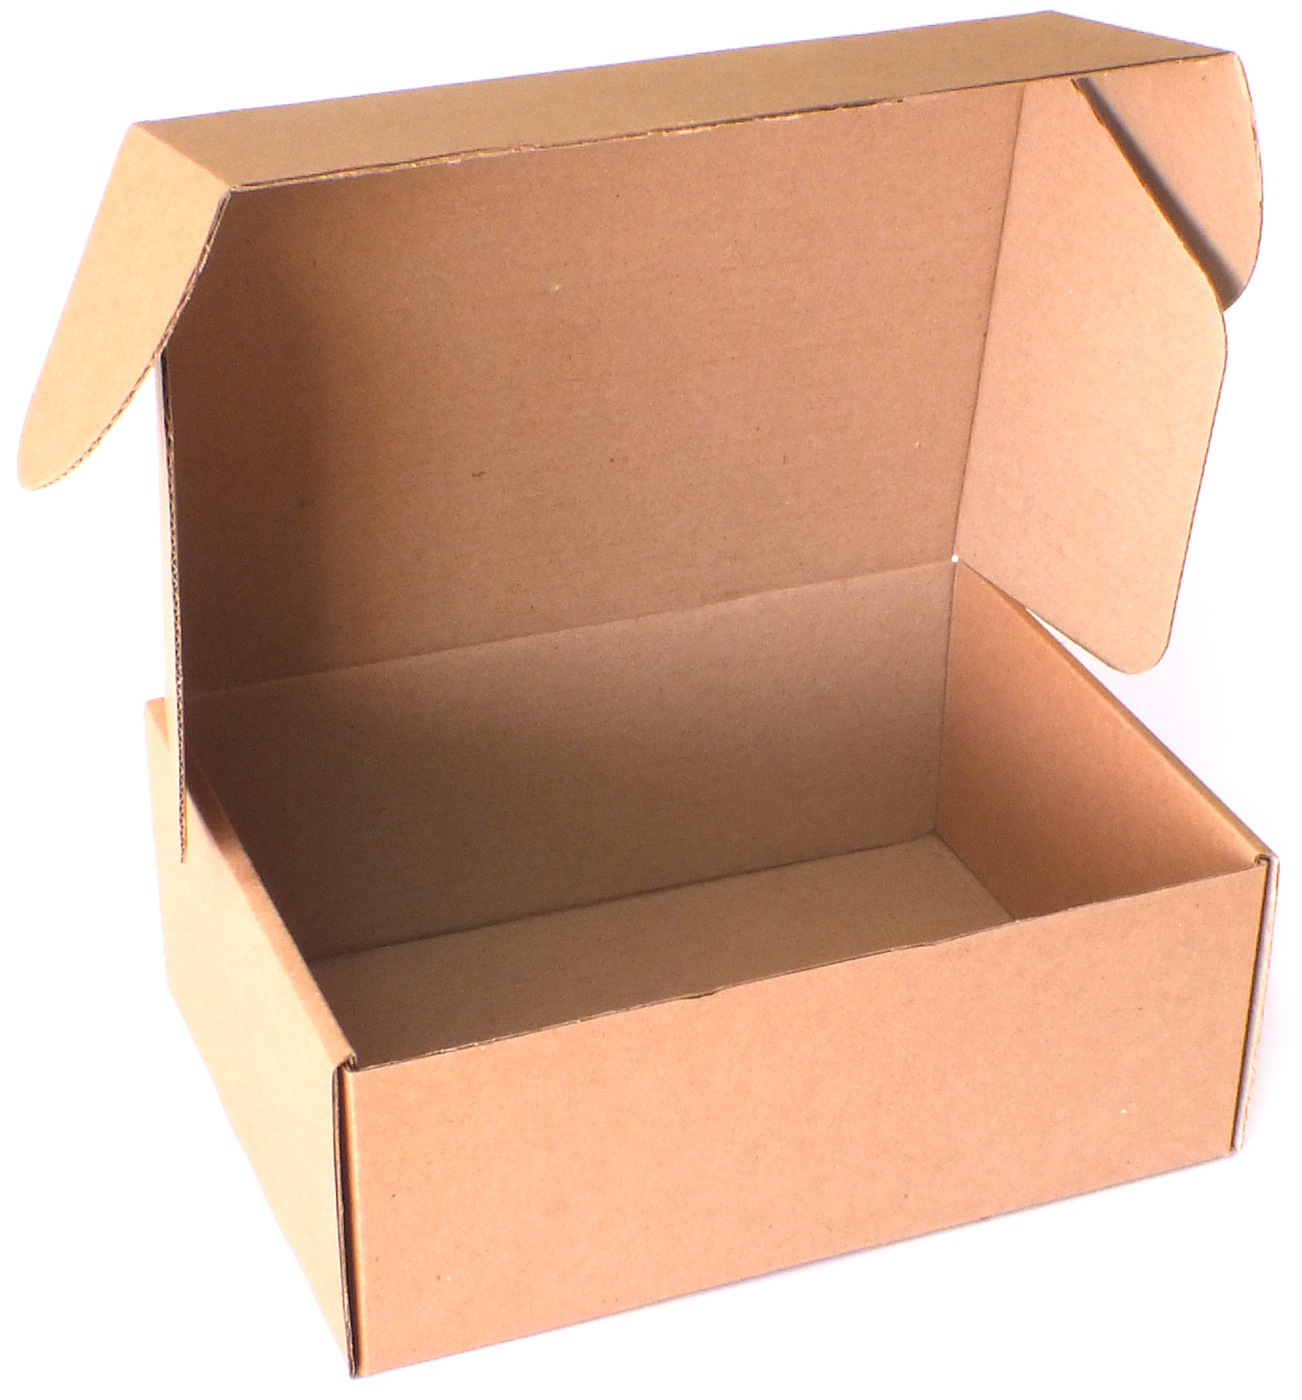 Мм упаковка 20 шт. Коробка из микрогофрокартона. Упаковка 20 штук. Комупак упаковка. Комупак фото.